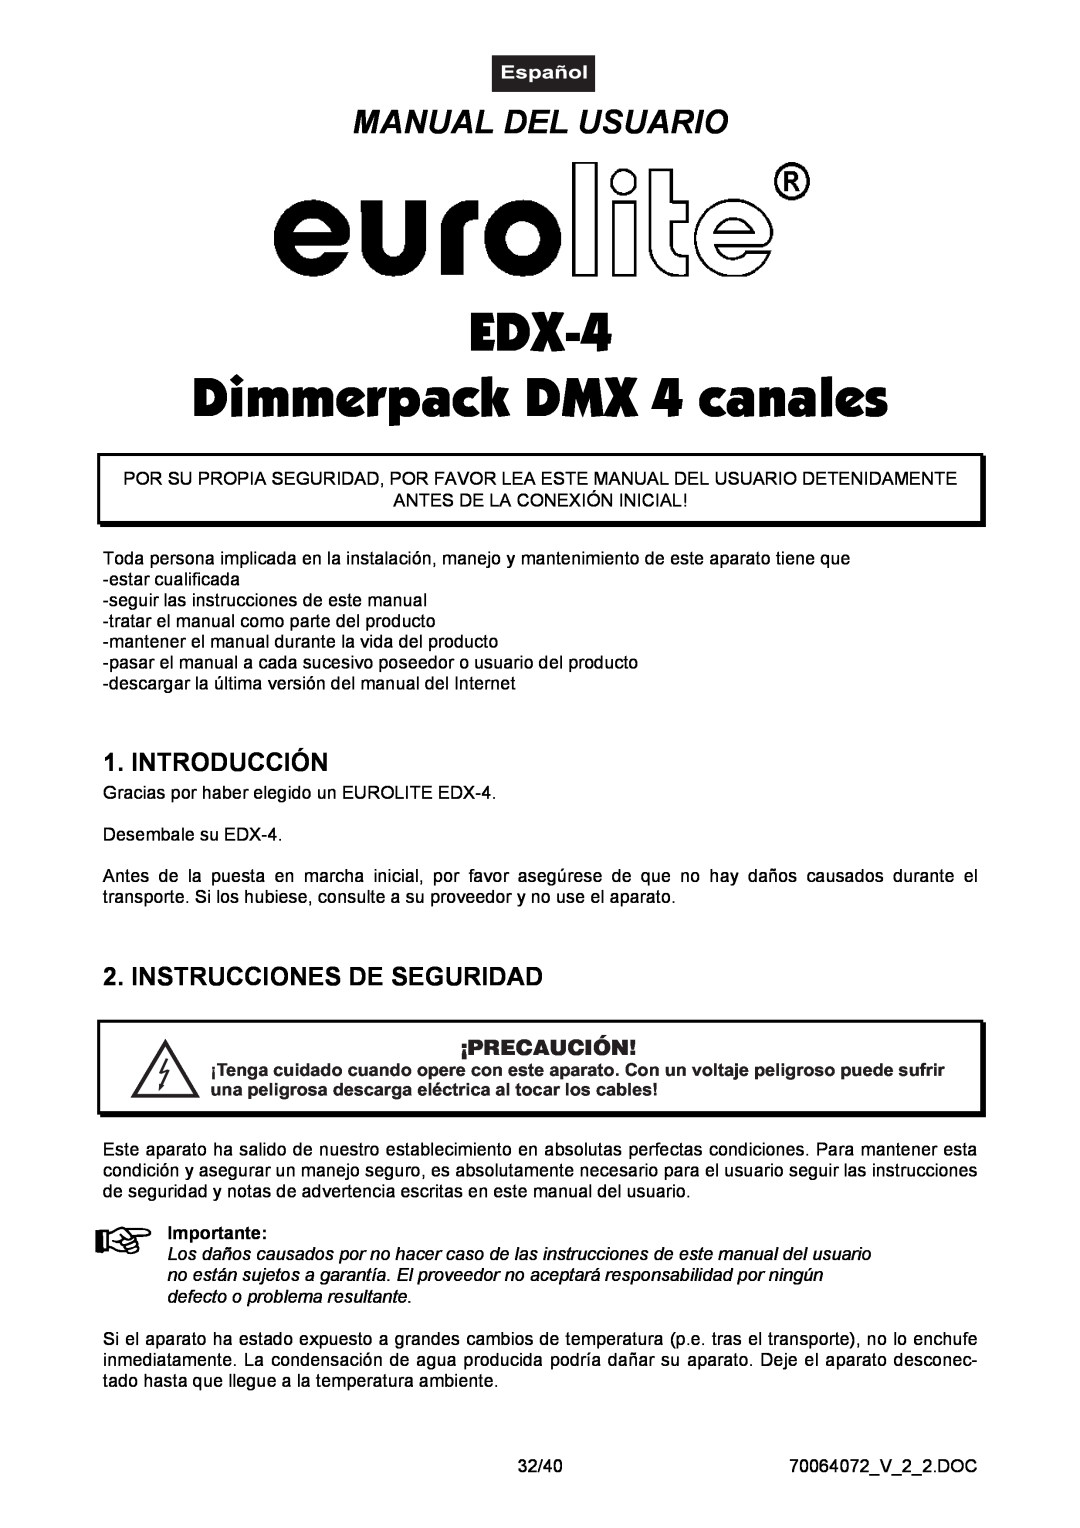 EuroLite Cases EDX-4 Dimmerpack DMX 4 canales, Manual Del Usuario, Introducción, Instrucciones De Seguridad, Importante 